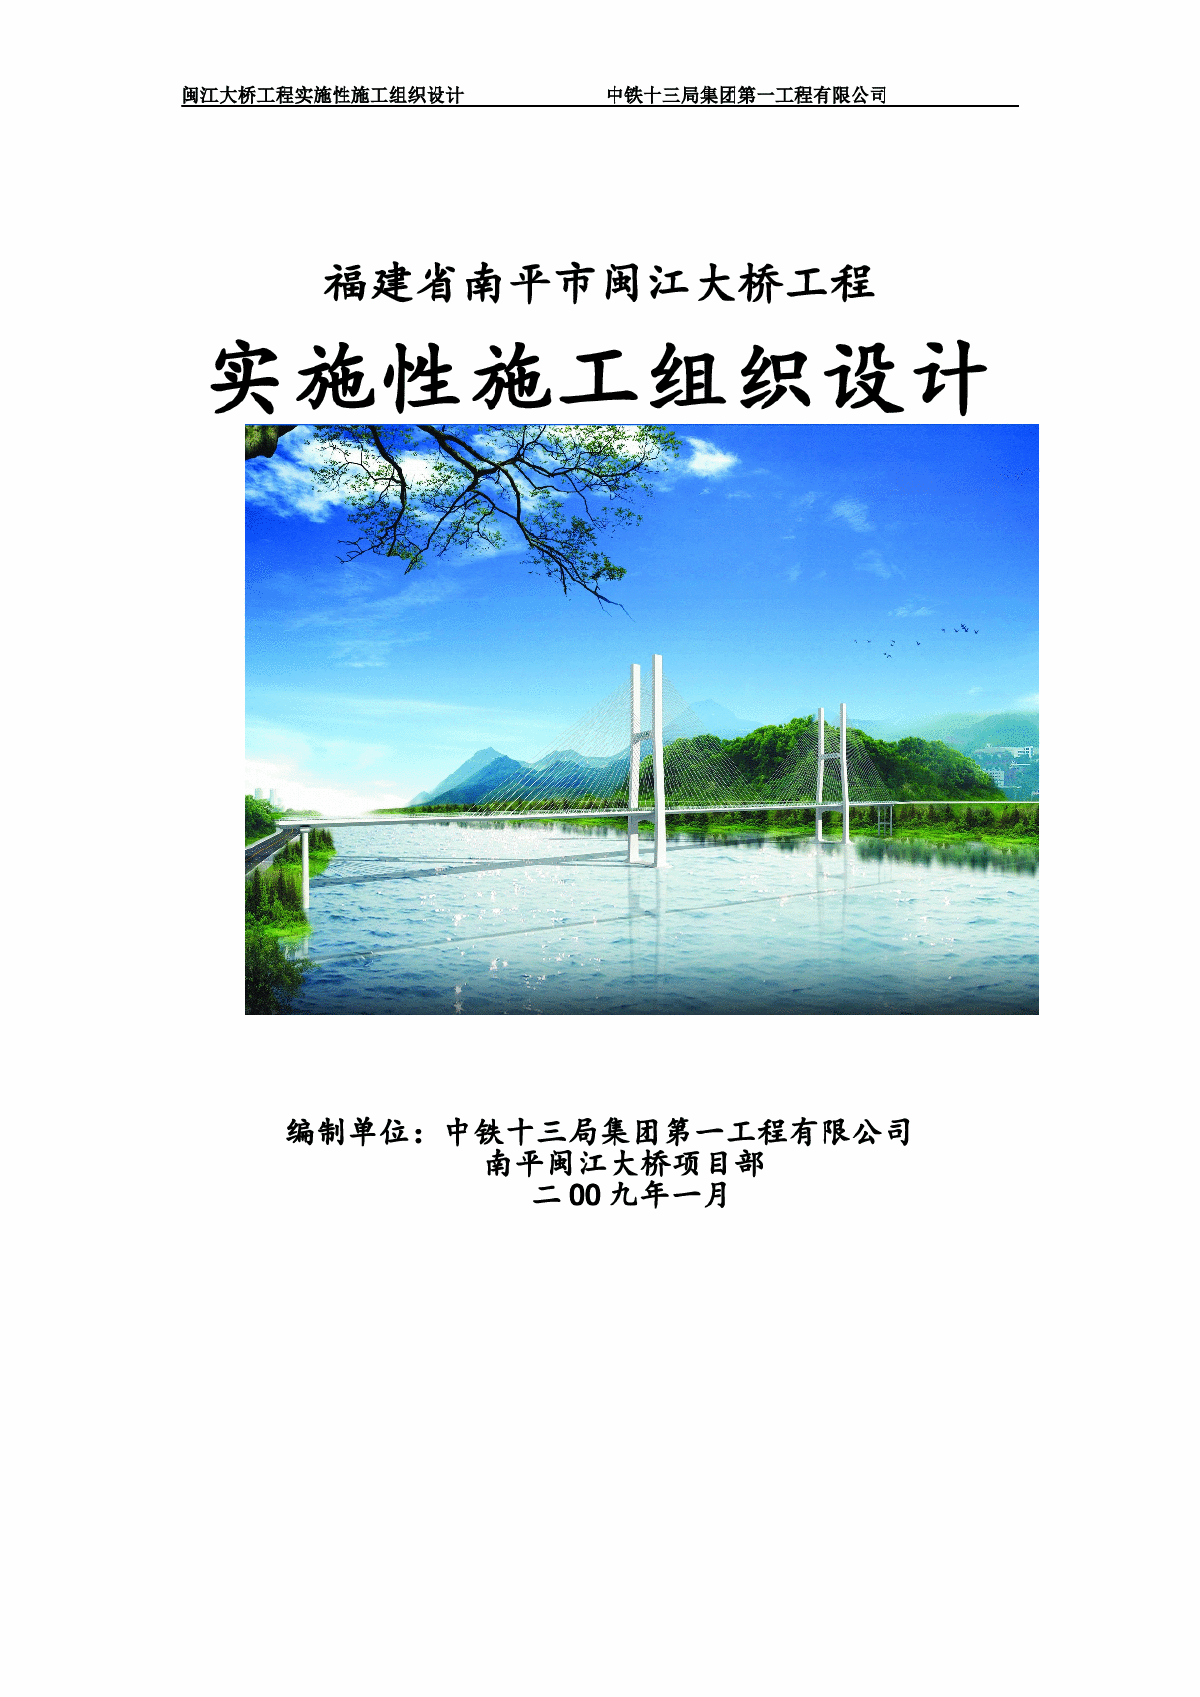 修改后闽江大桥总体施工组织设计